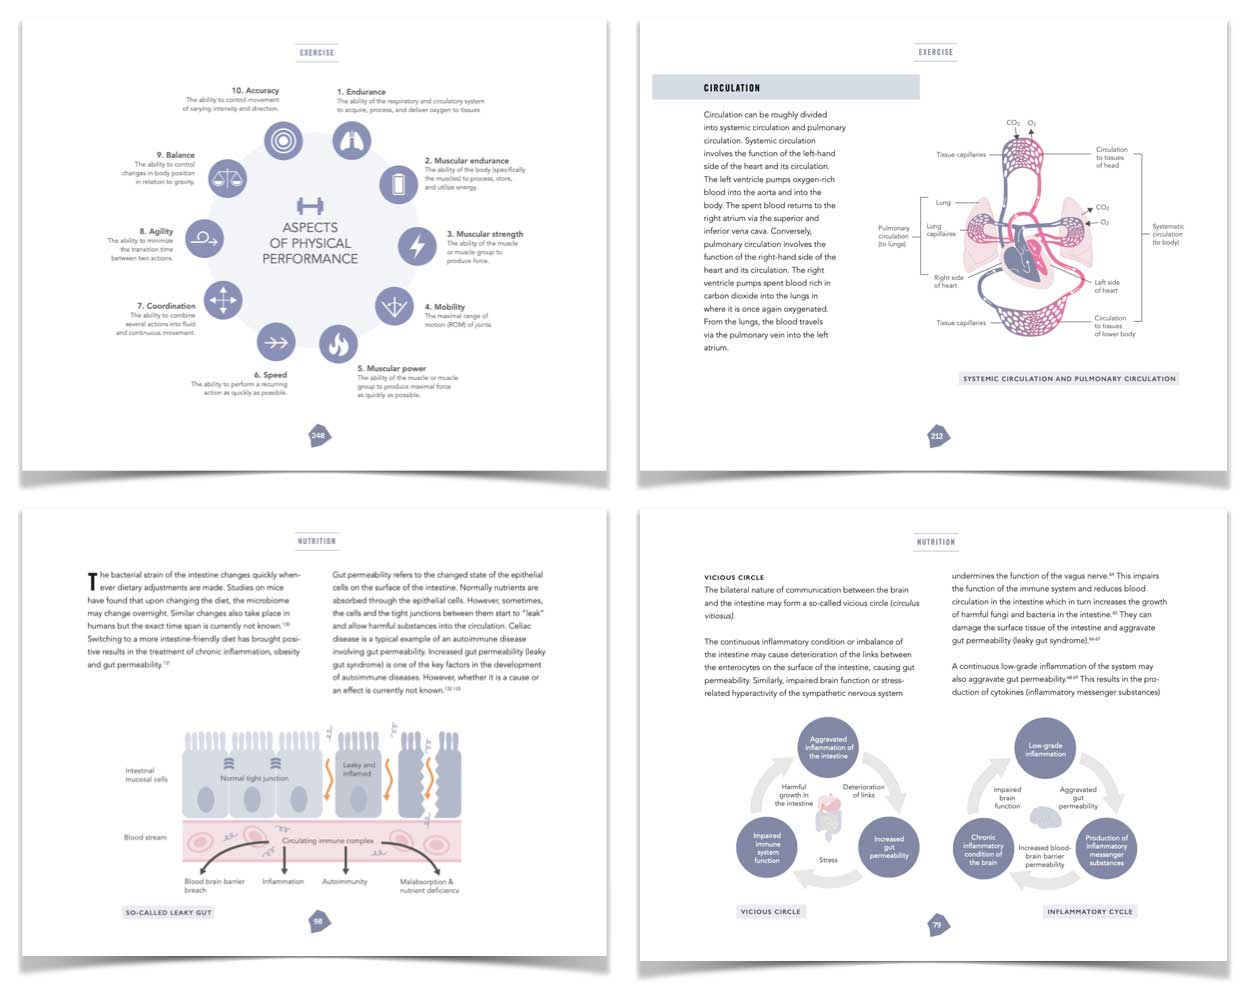 Справочник биохакера:обновите себя и раскройте свой внутренний потенциал (электронная книга)